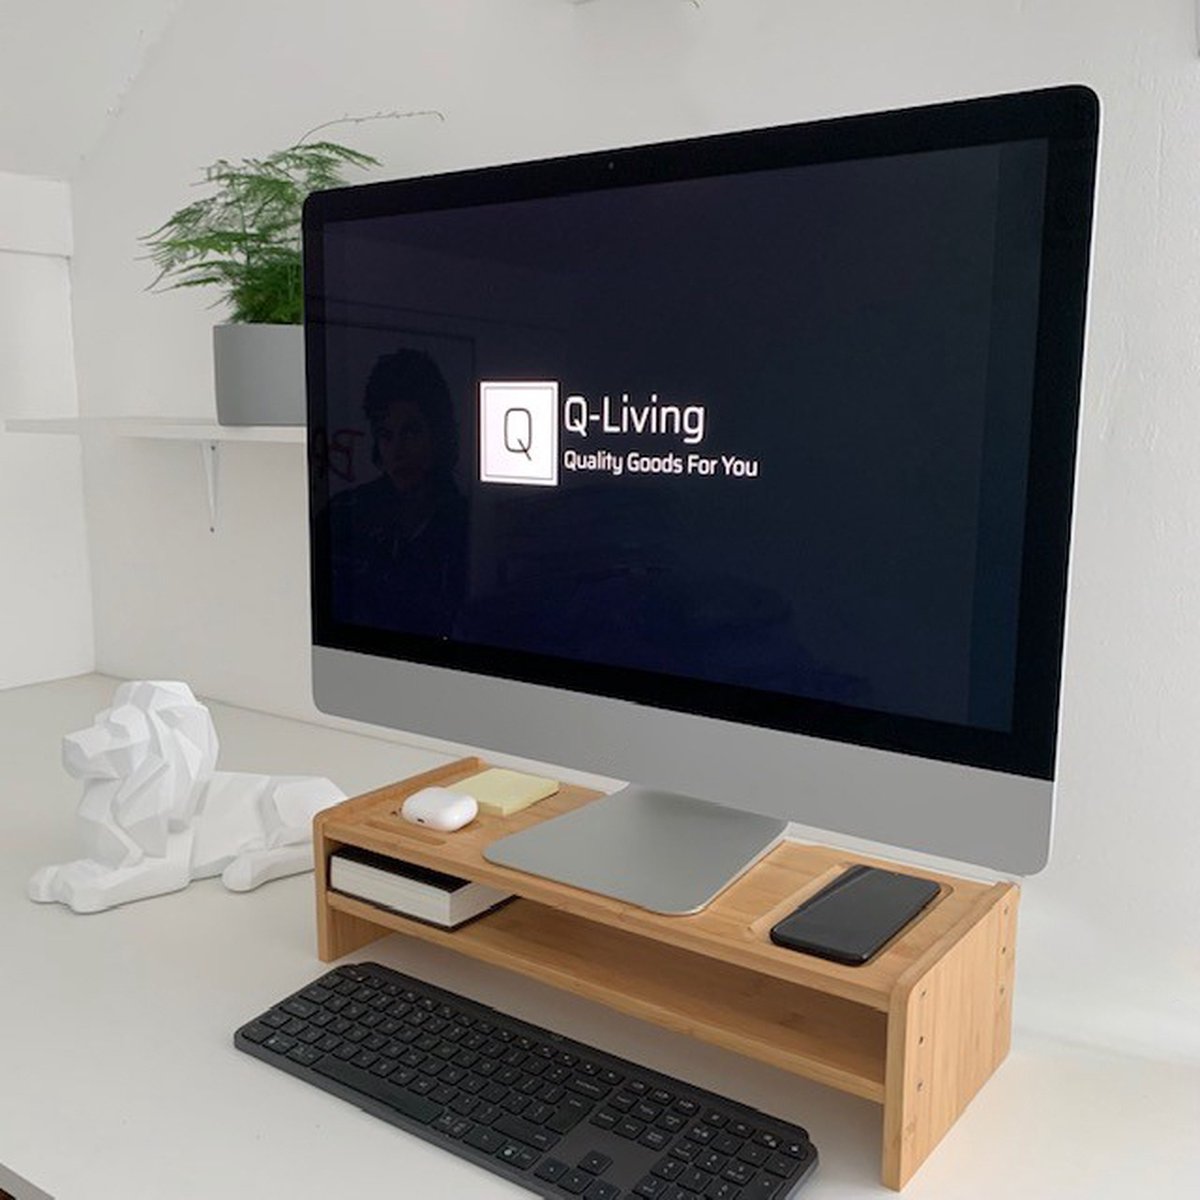 Q-Living Monitorstandaard Bamboe - Monitor Verhoger - Laptopstandaard - TV Verhoger - Computerscherm Verhoger - Monitor Standaard - Voor Laptop En Pc - Laptoptafel - Bureau Organizer